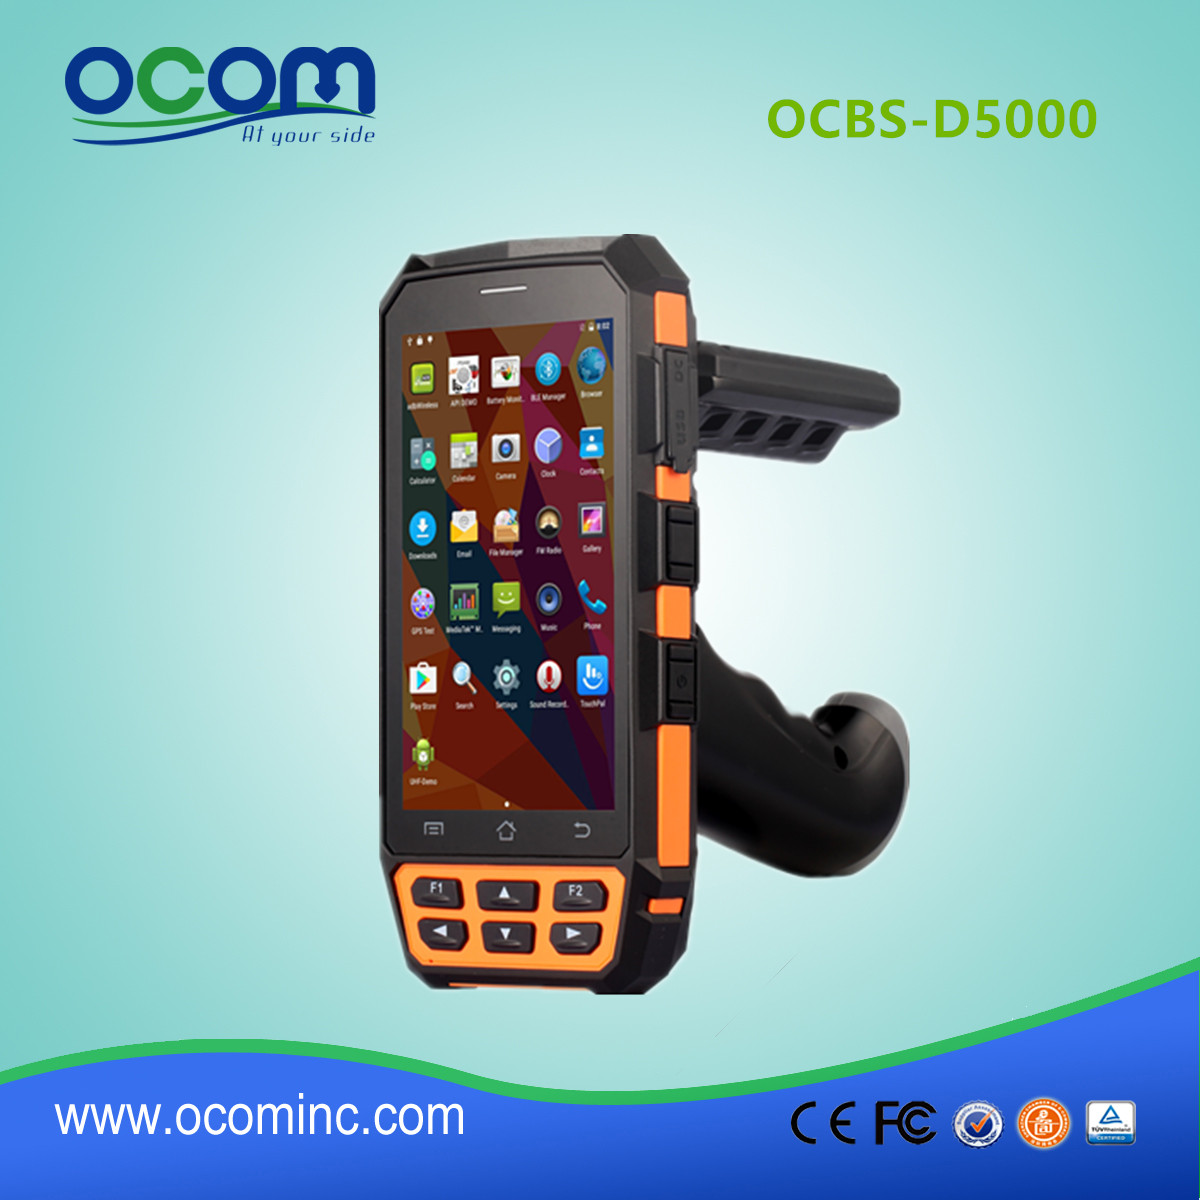 OCBS -D5000 курьер сканер QR-код Android-КПК с пистолетной рукояткой